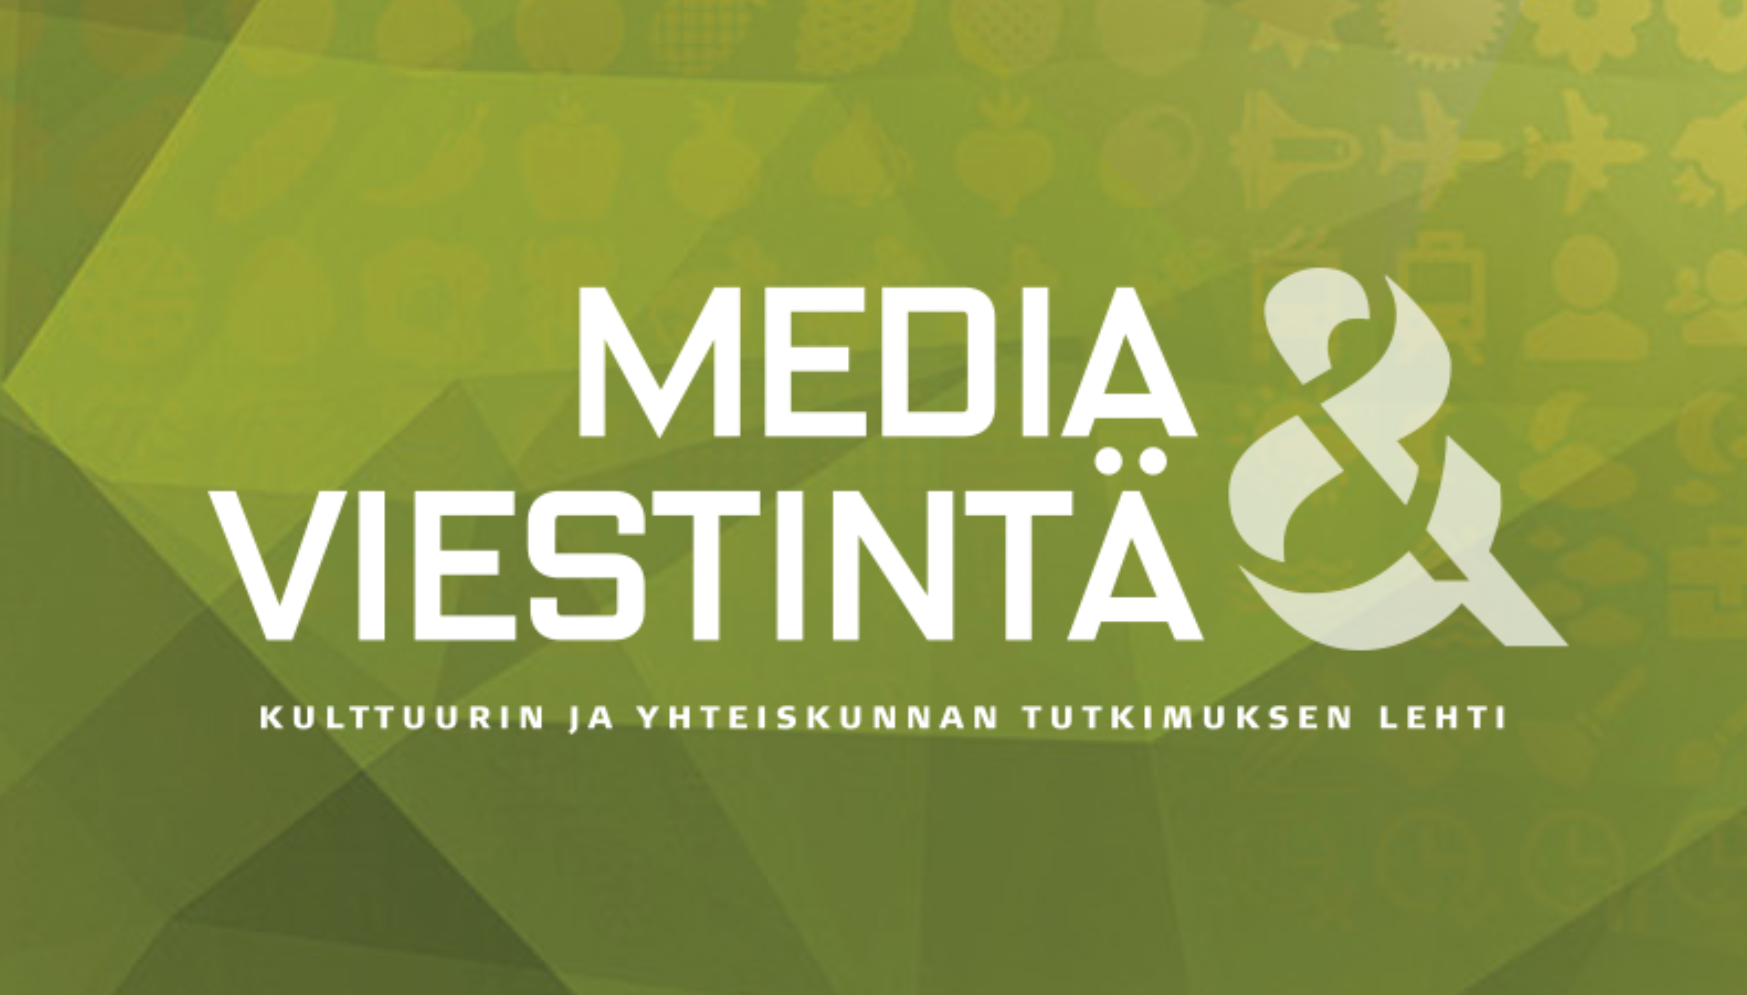 Media & viestintä -lehden logo.